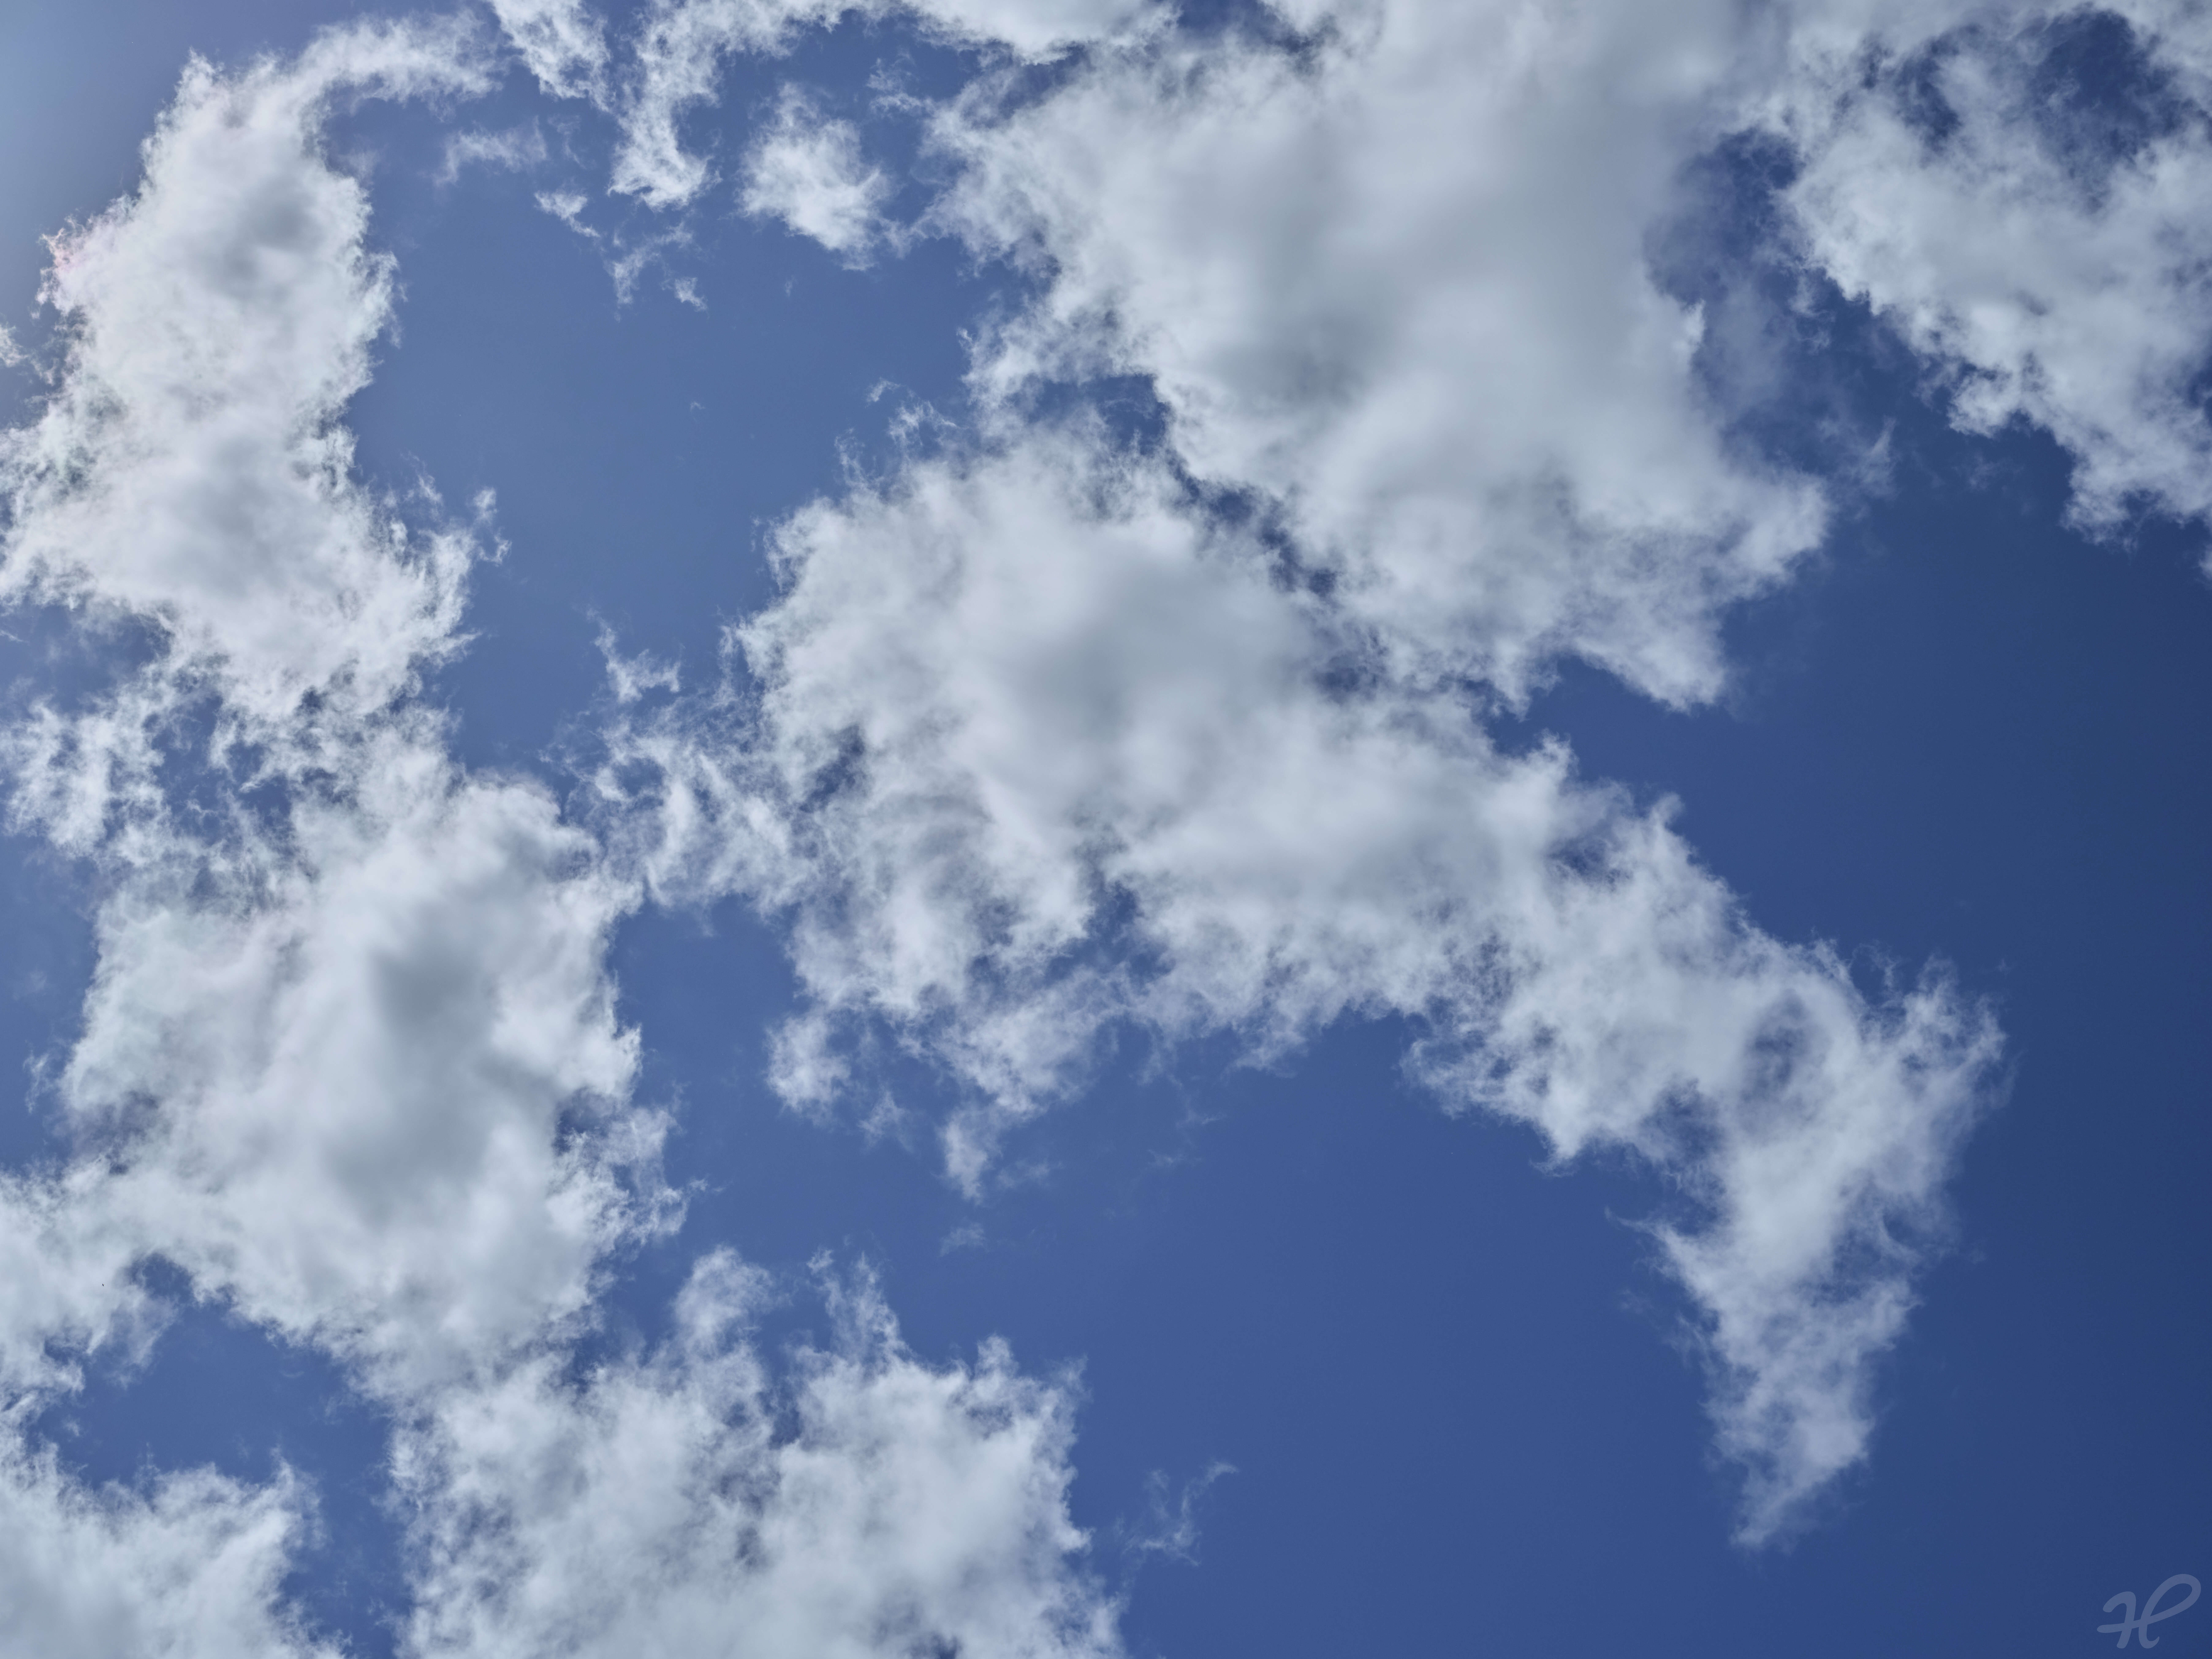 Blick in den strahlend blauen Himmel mit einigen Wölkchen (Sehr hochauflösend)